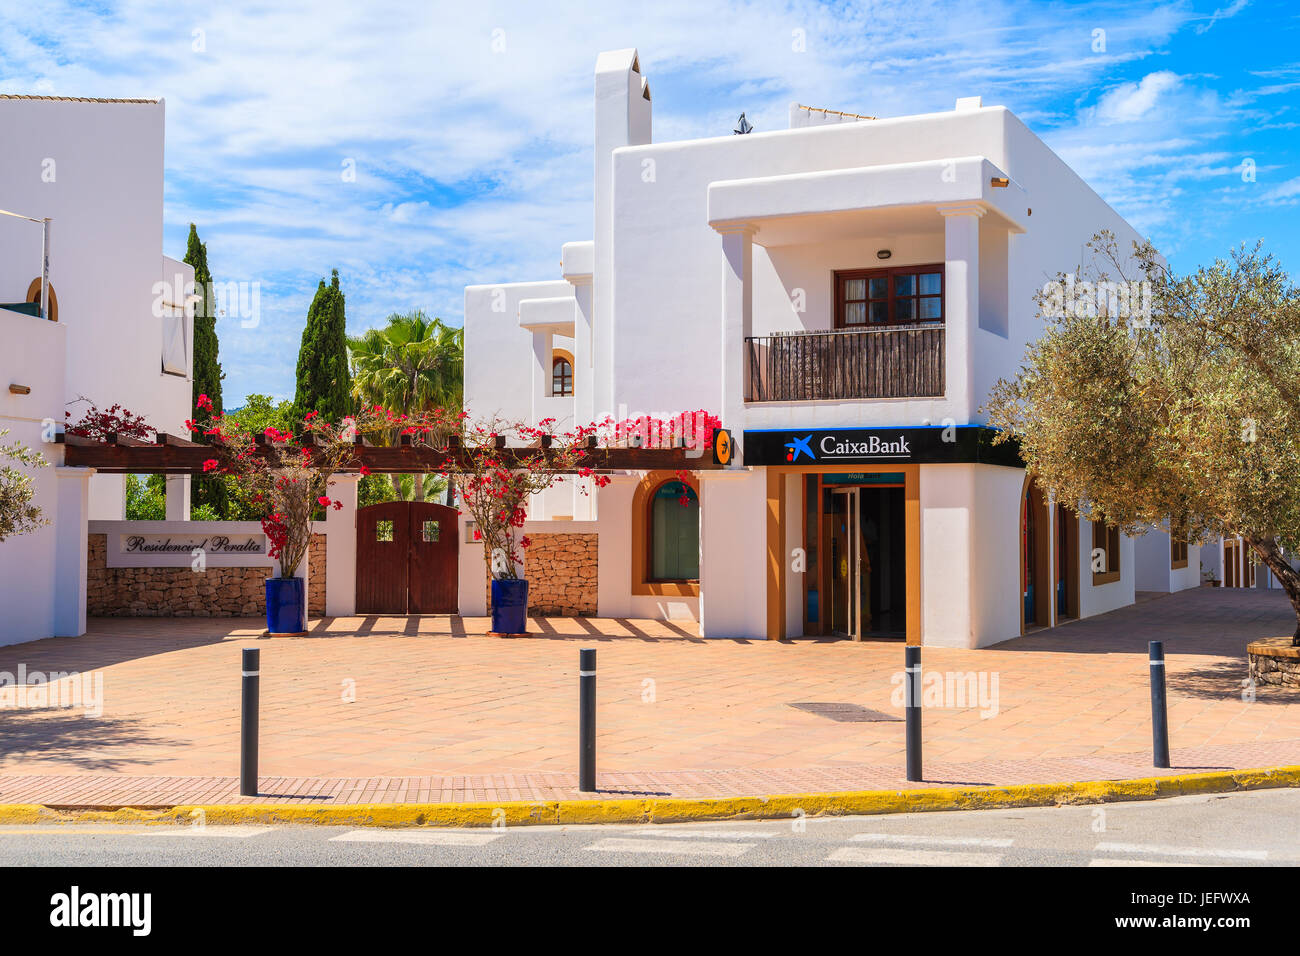 Insel IBIZA, Spanien - 18. Mai 2017: Straße mit typischen Architektur von Sant Carles de Peralta Dorf mit weiß getünchten Häusern, Insel Ibiza, Spanien. Stockfoto